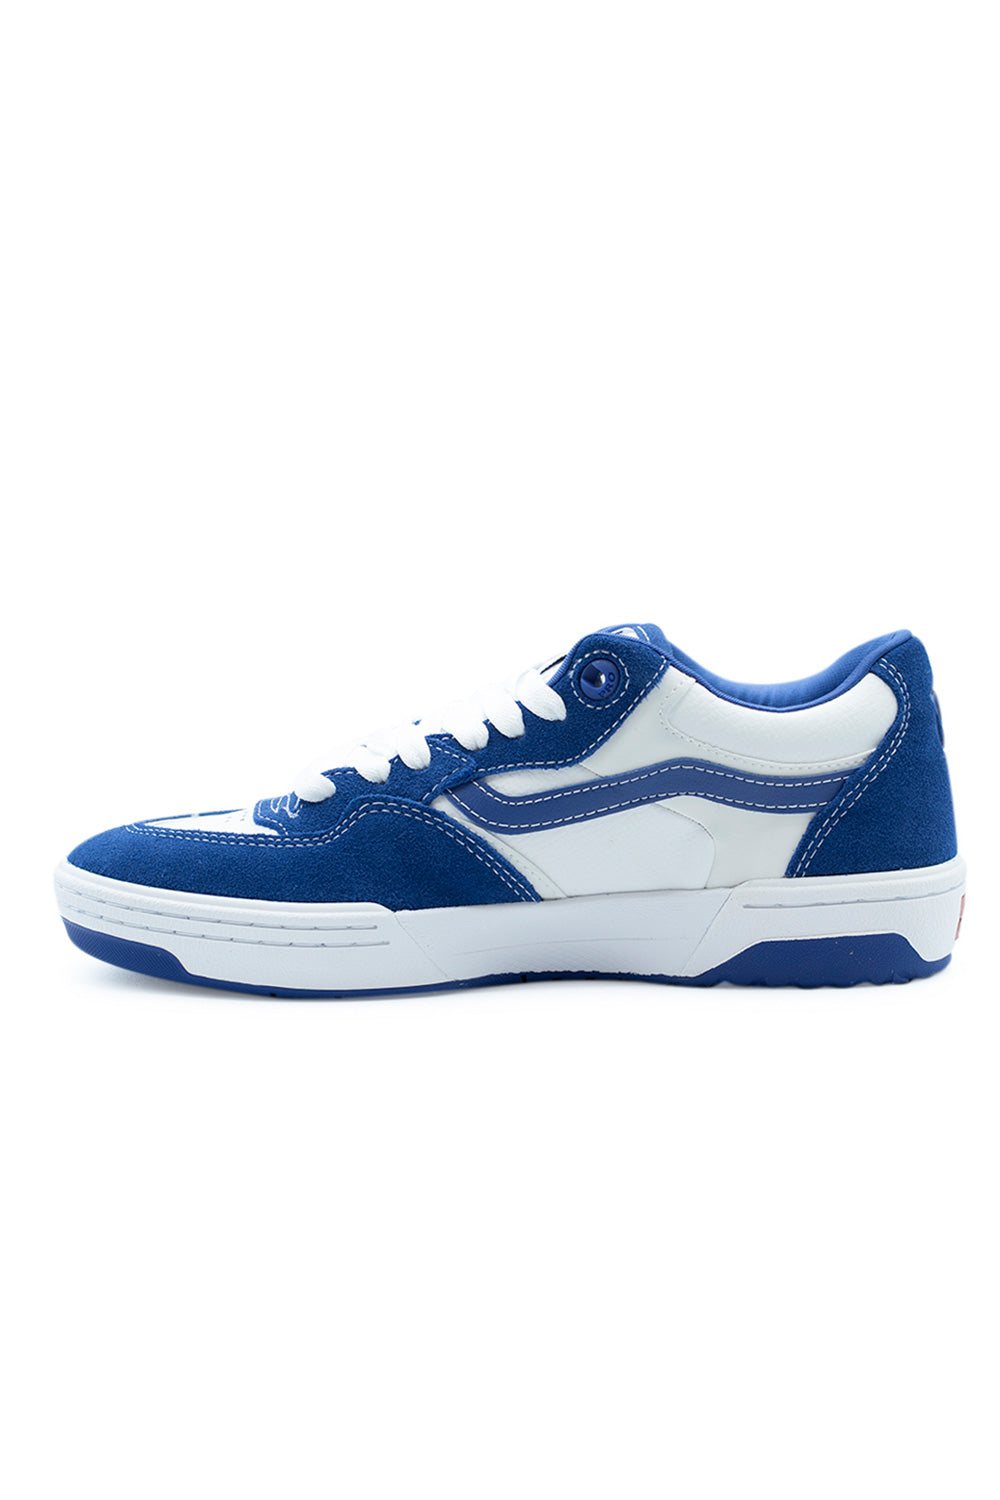 Vans Rowan 2 (Skate) Shoe True Blue / White - BONKERS